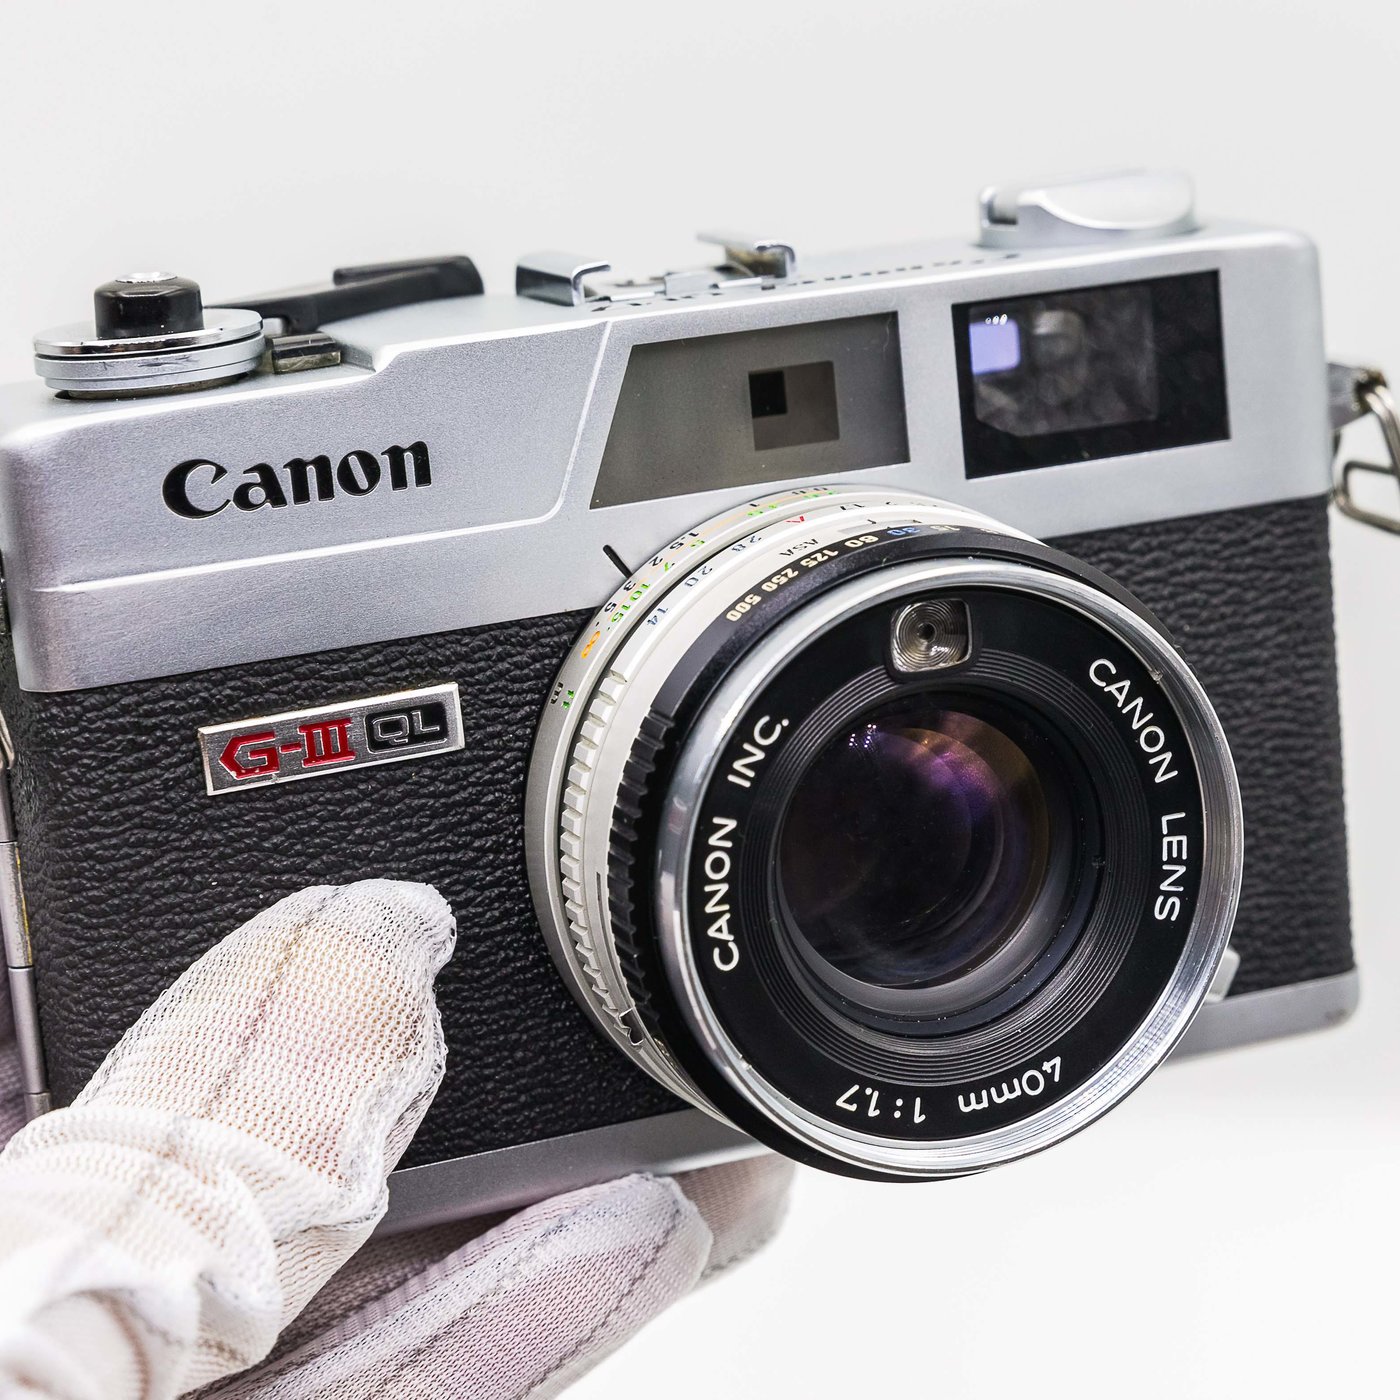 二手新中古:經典Canon QL17 Glll三代40mm F1.7大光圈旁軸相機消失的